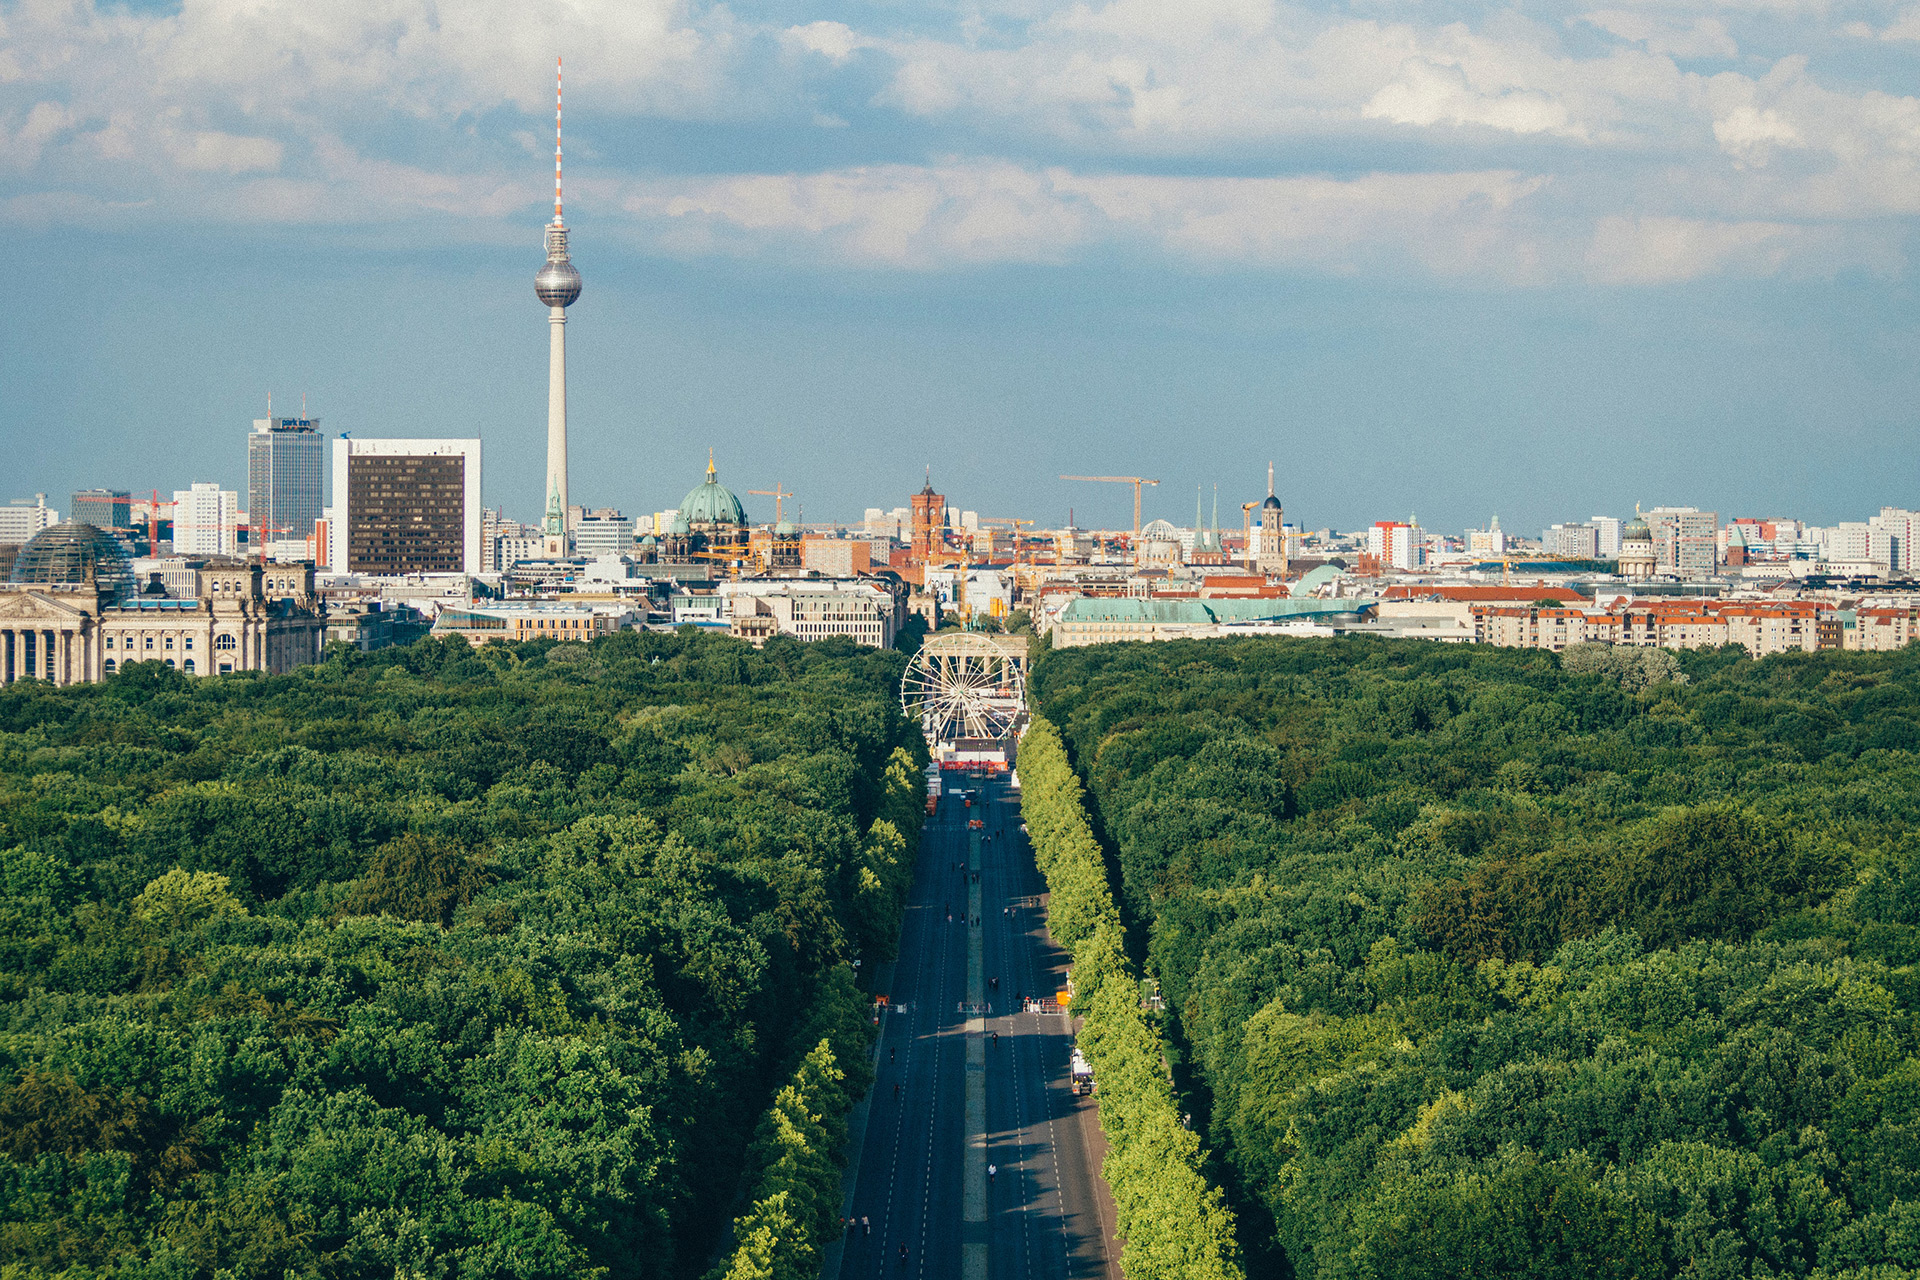 Eigentumswohnung kaufen in Berlin vom Top Immobilienmakler WvM
					©Unverbindliche Darstellung
				